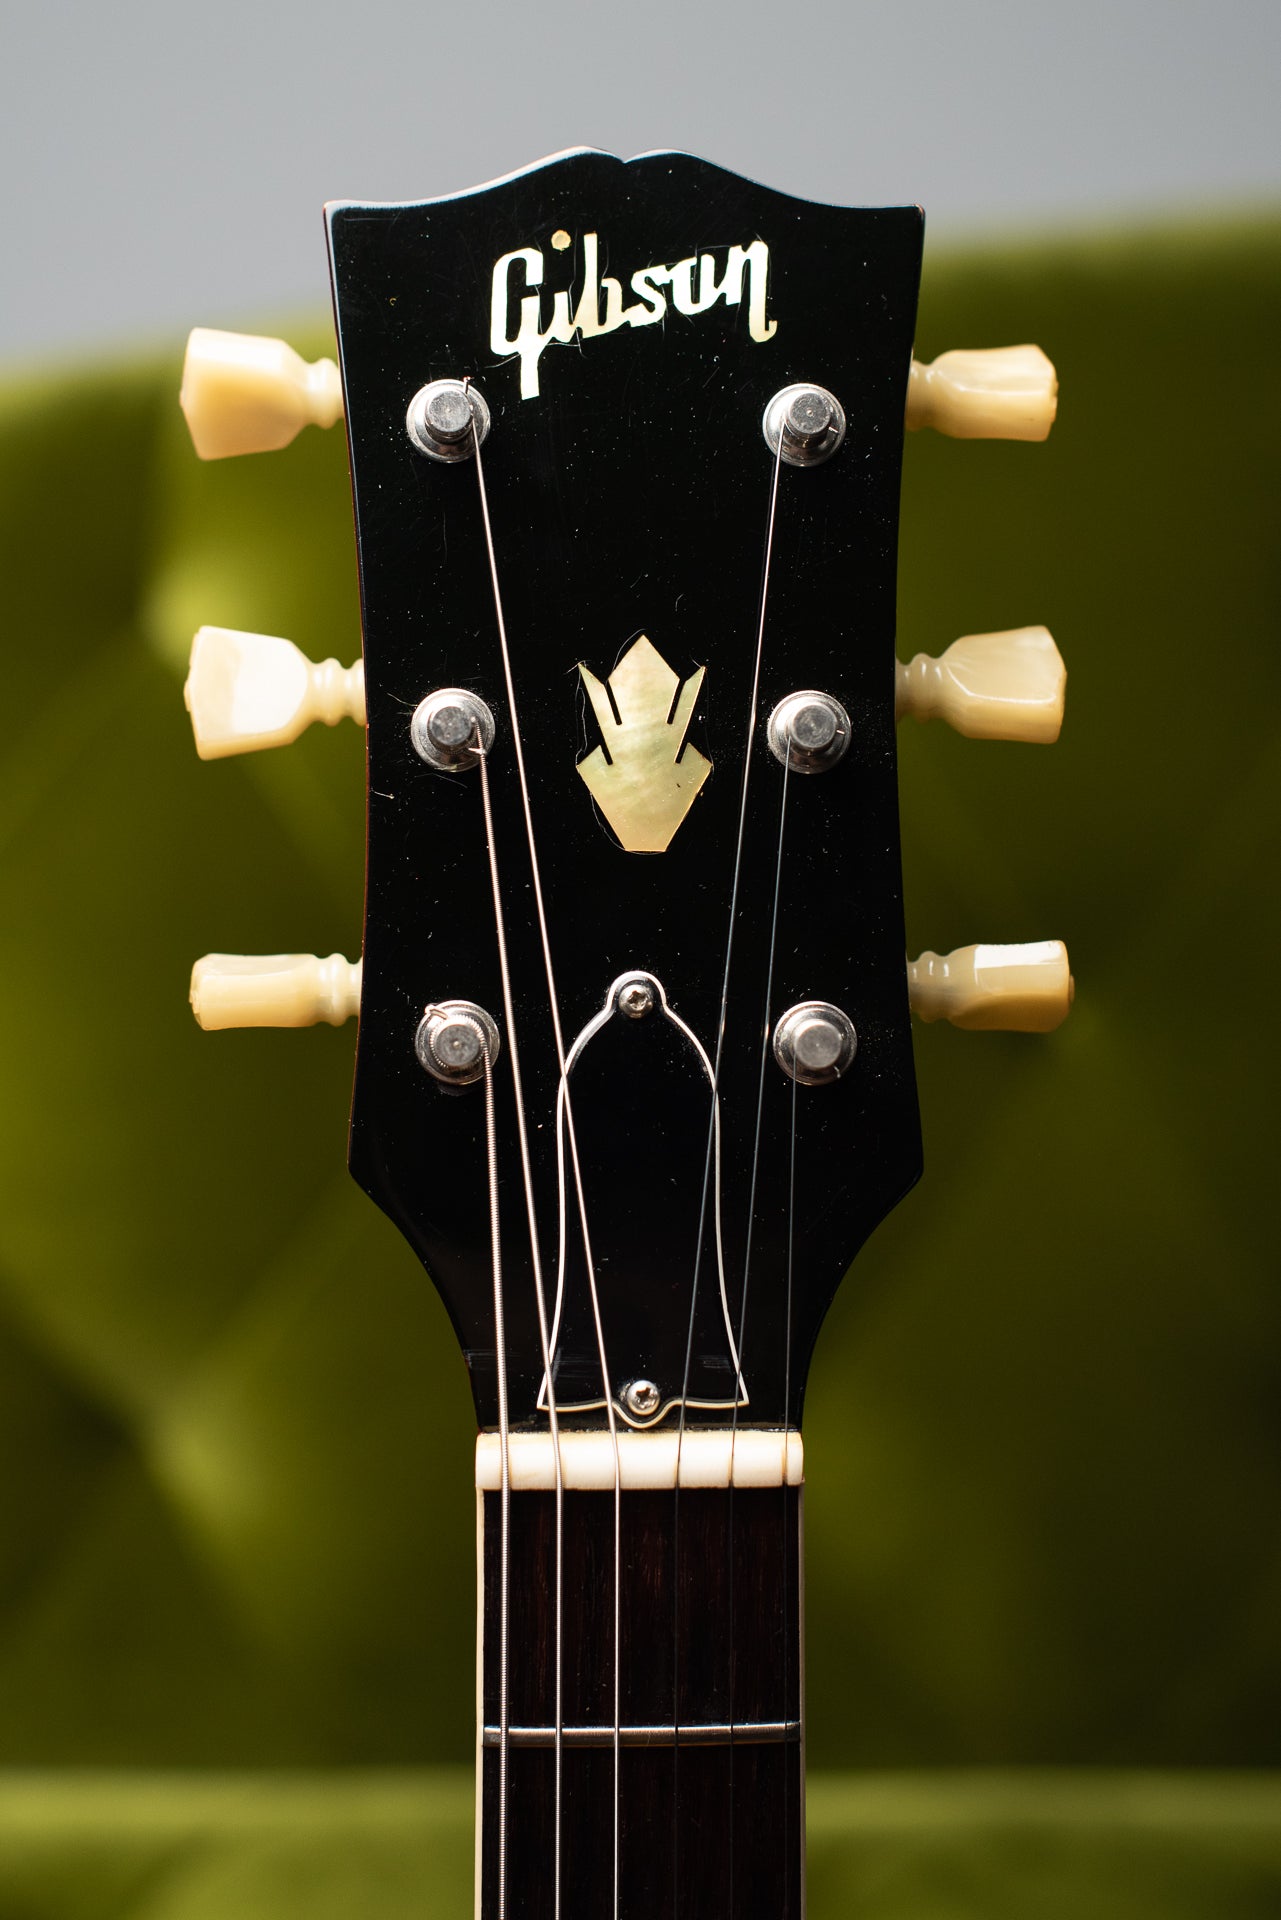 1965 Gibson SG Standard headstock Gibson logo